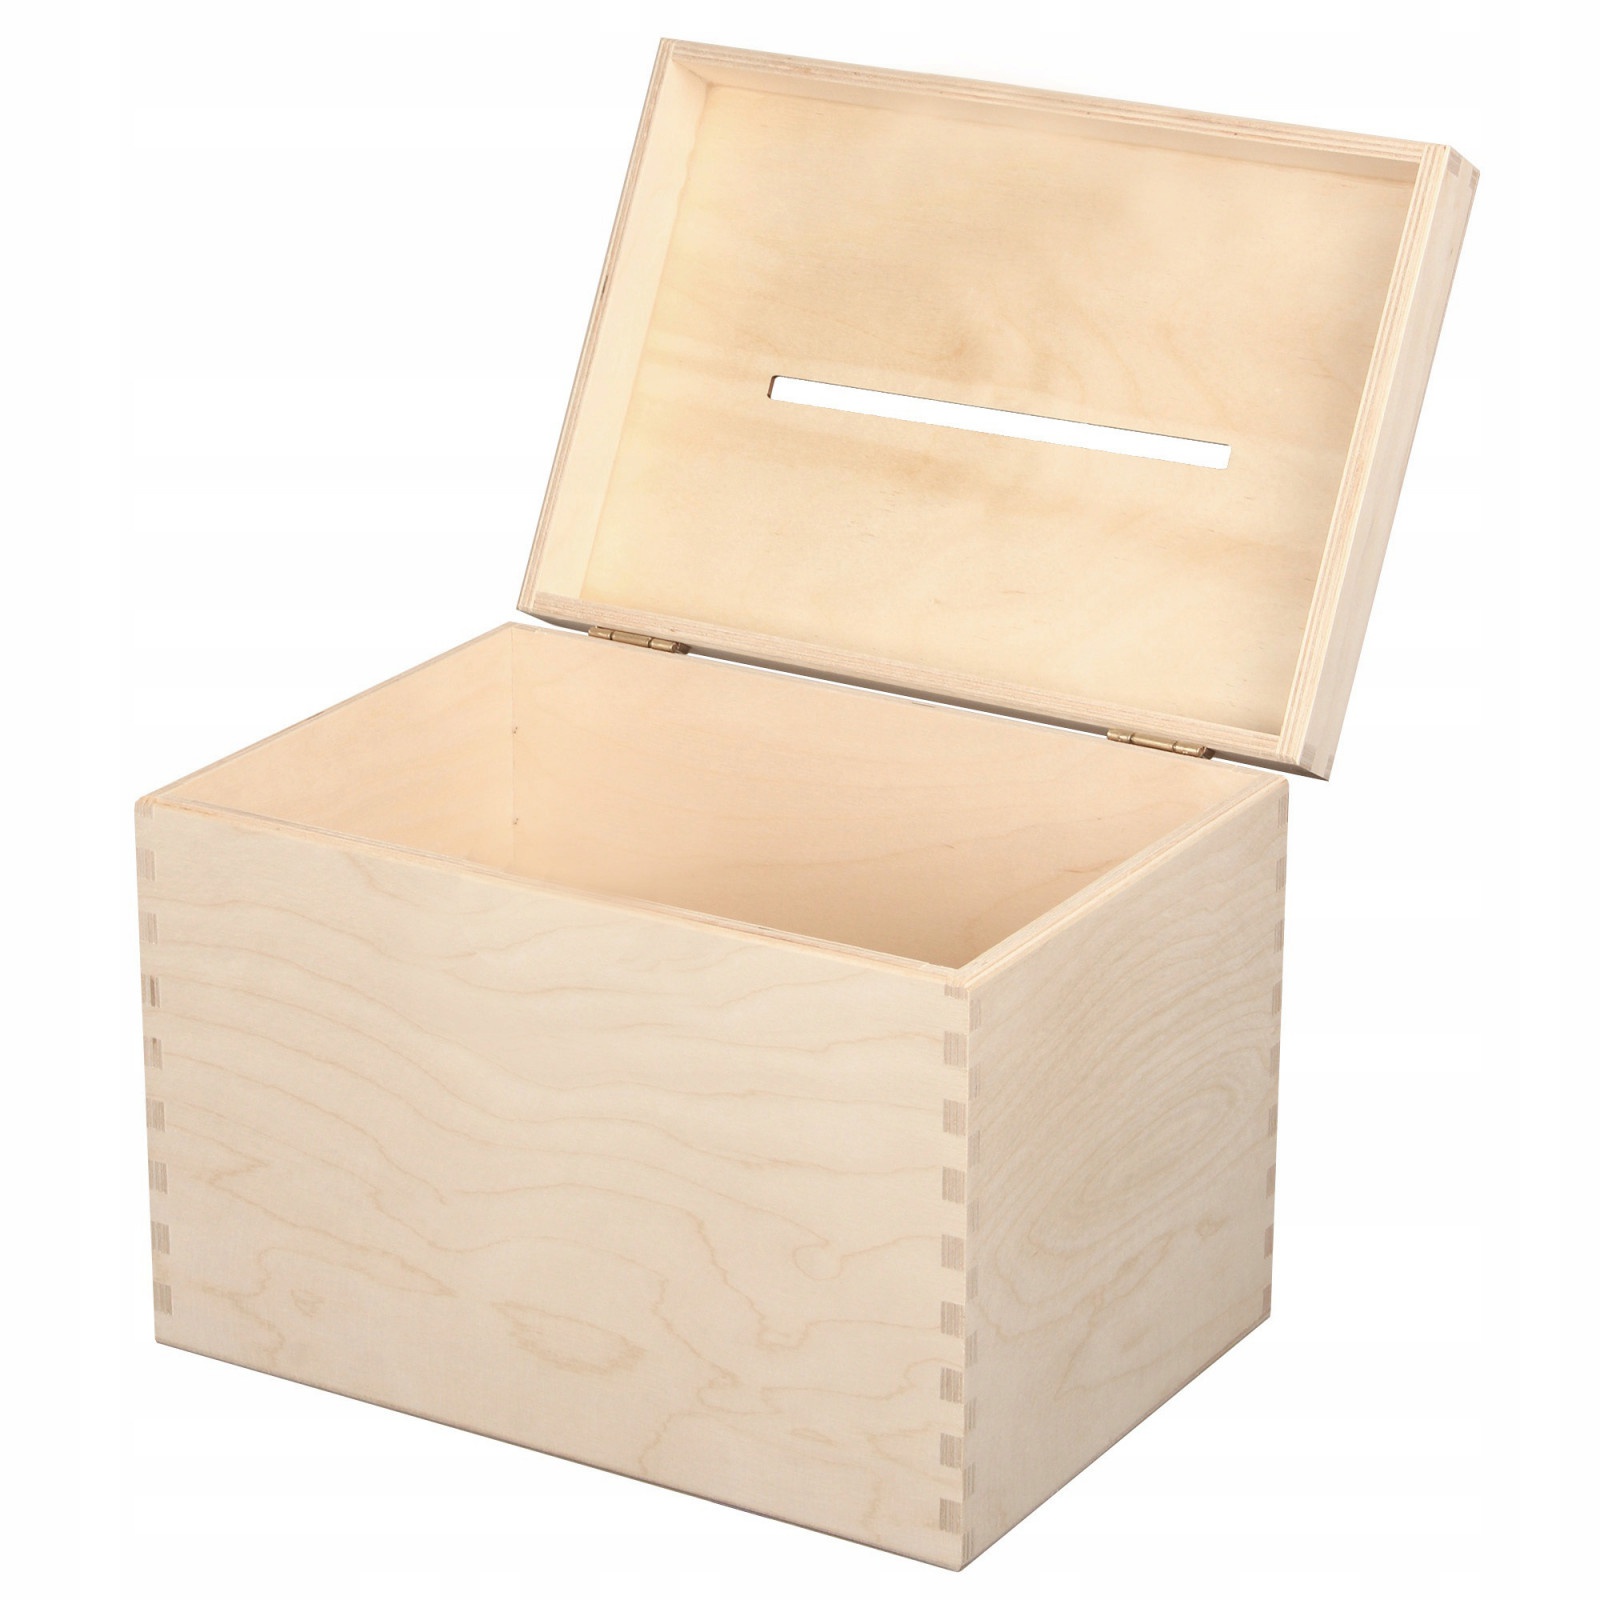 Drevený box 29x20x21cm krabička na svadbu obálky megamix.sk